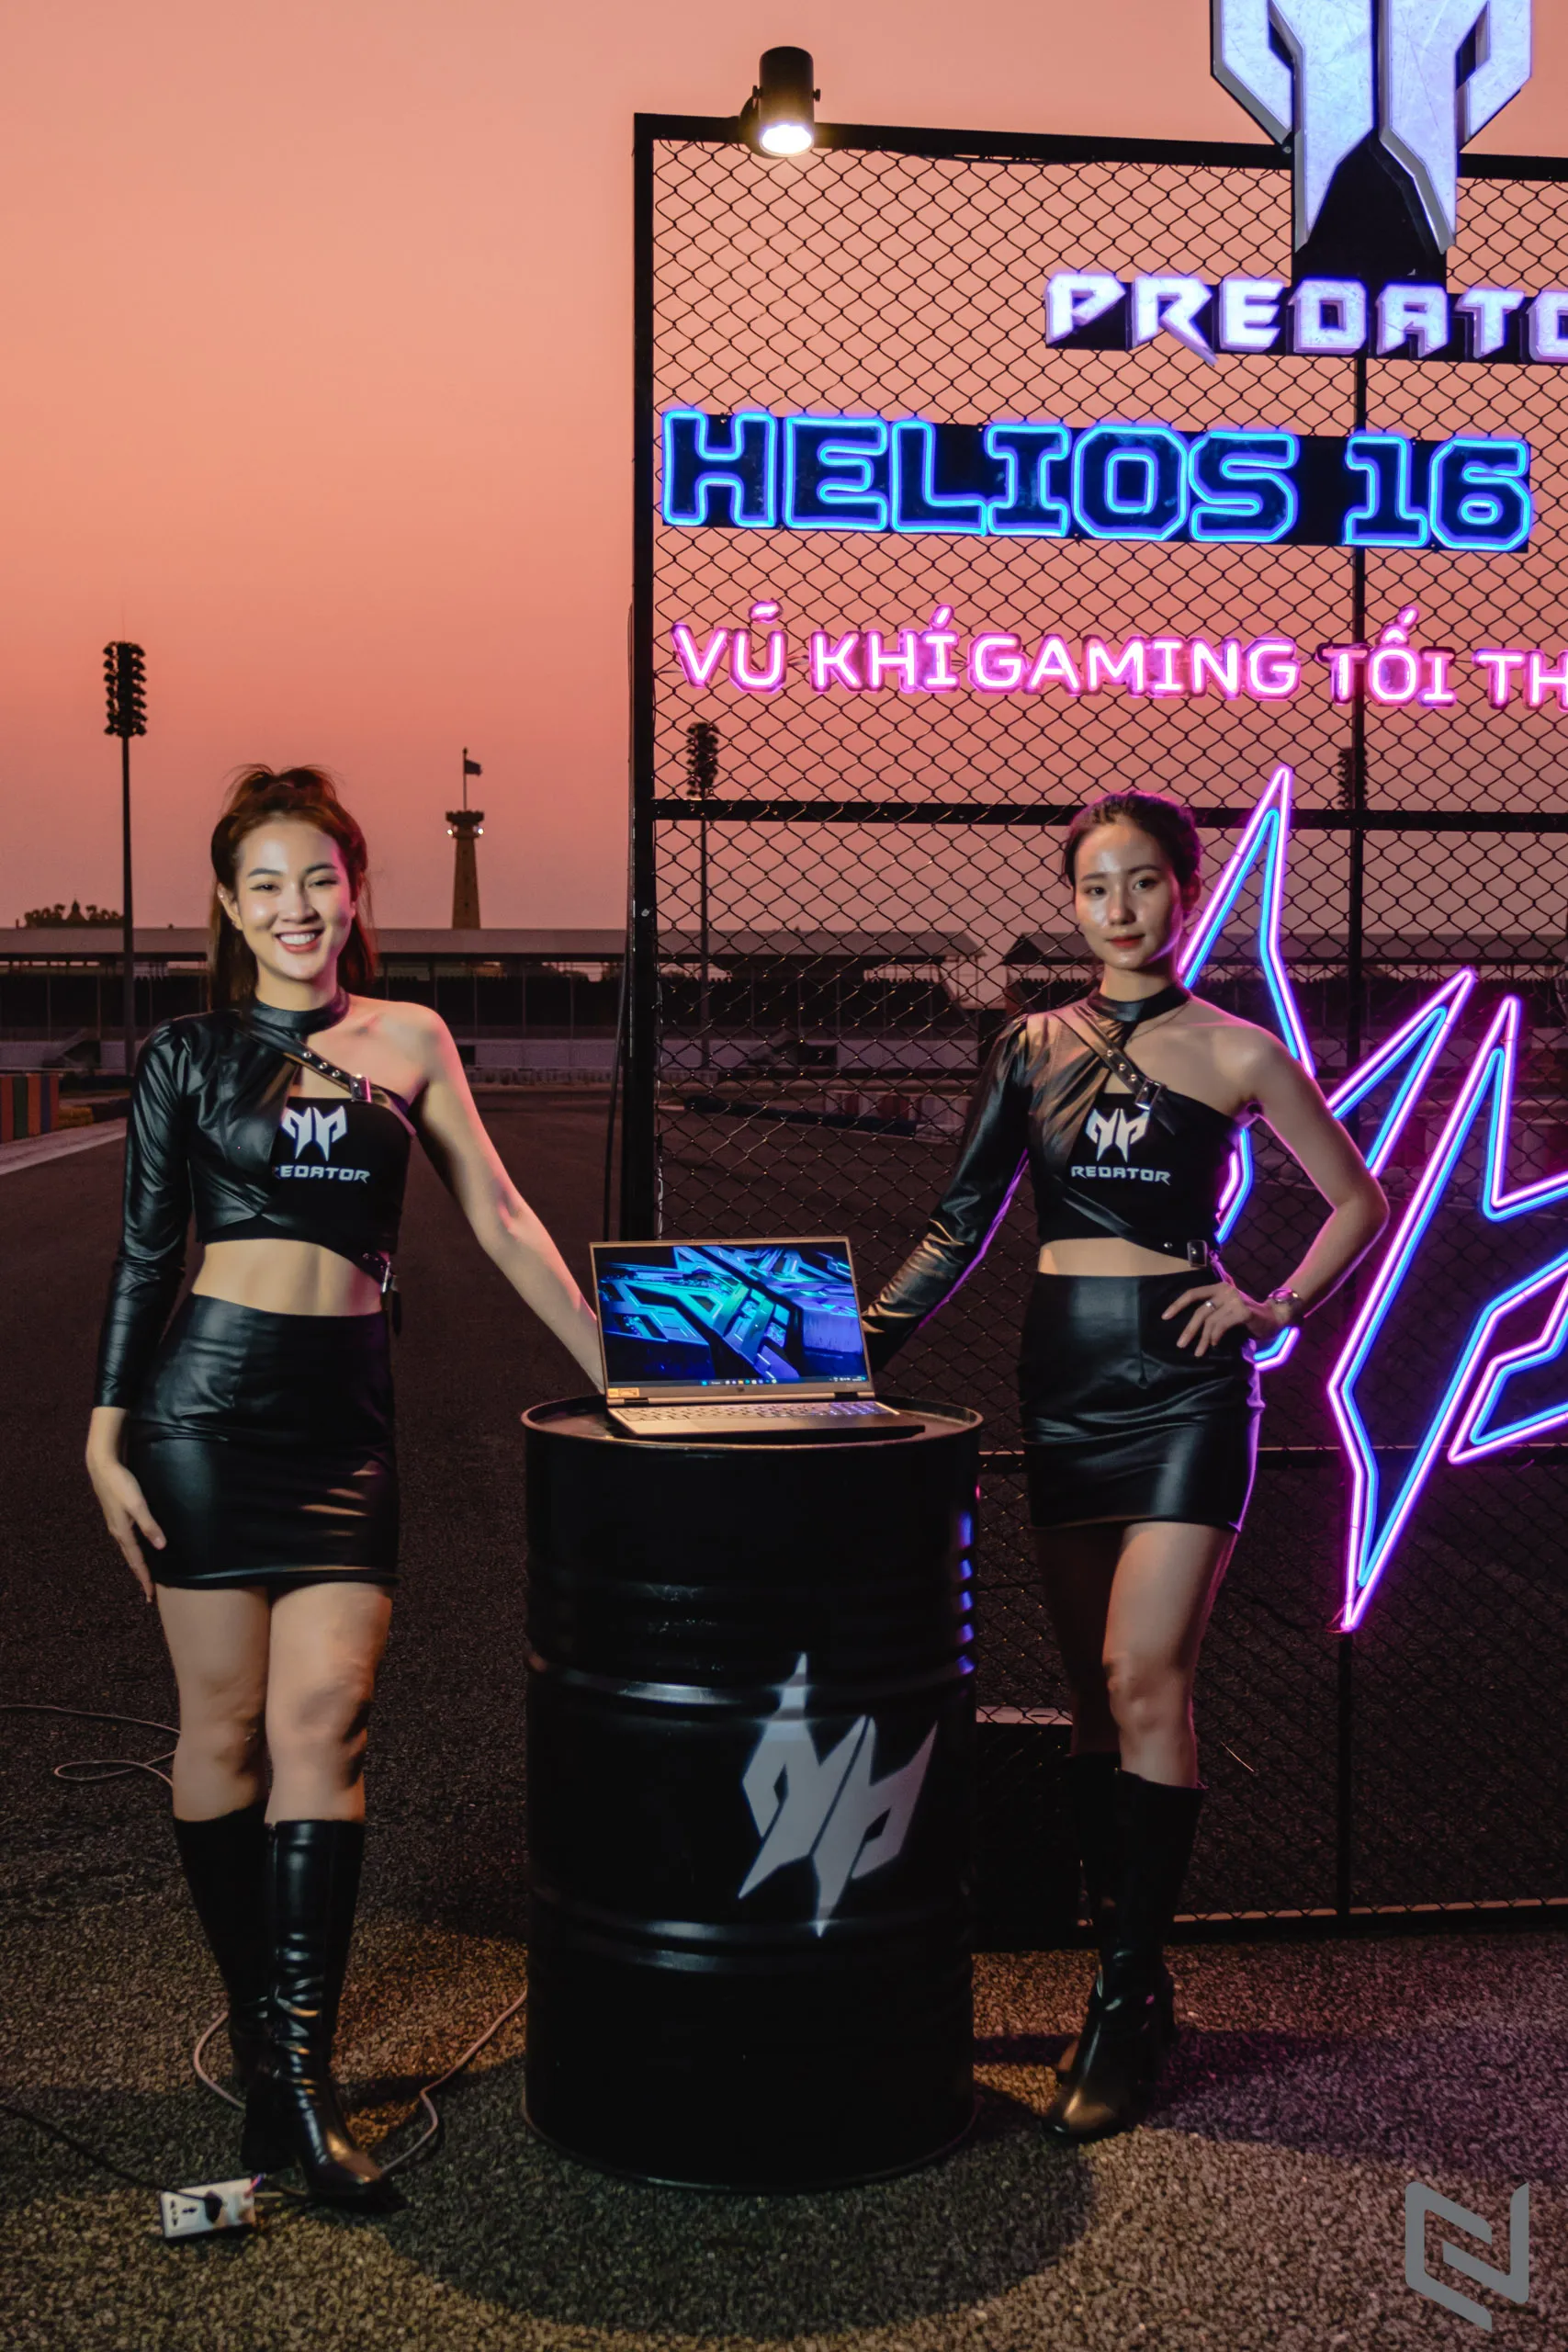 Predator Helios 16 | 18 ra mắt – Bộ đôi laptop gaming cao cấp trên 110 triệu đã chính thức có mặt tại Việt Nam